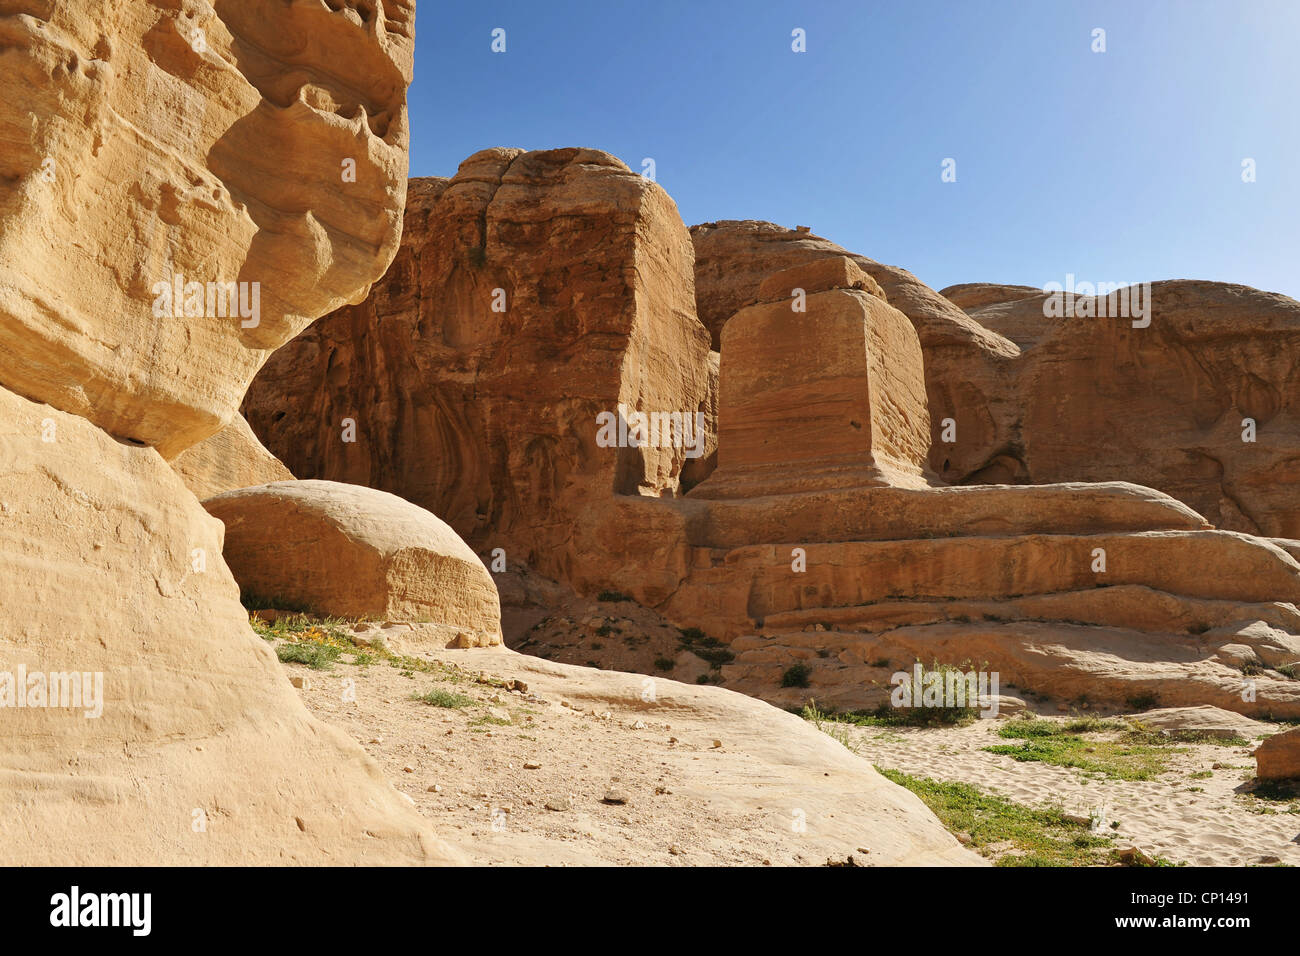 Dies ist ein Bild von der antiken Stadt Petra, Jordanien Stockfoto